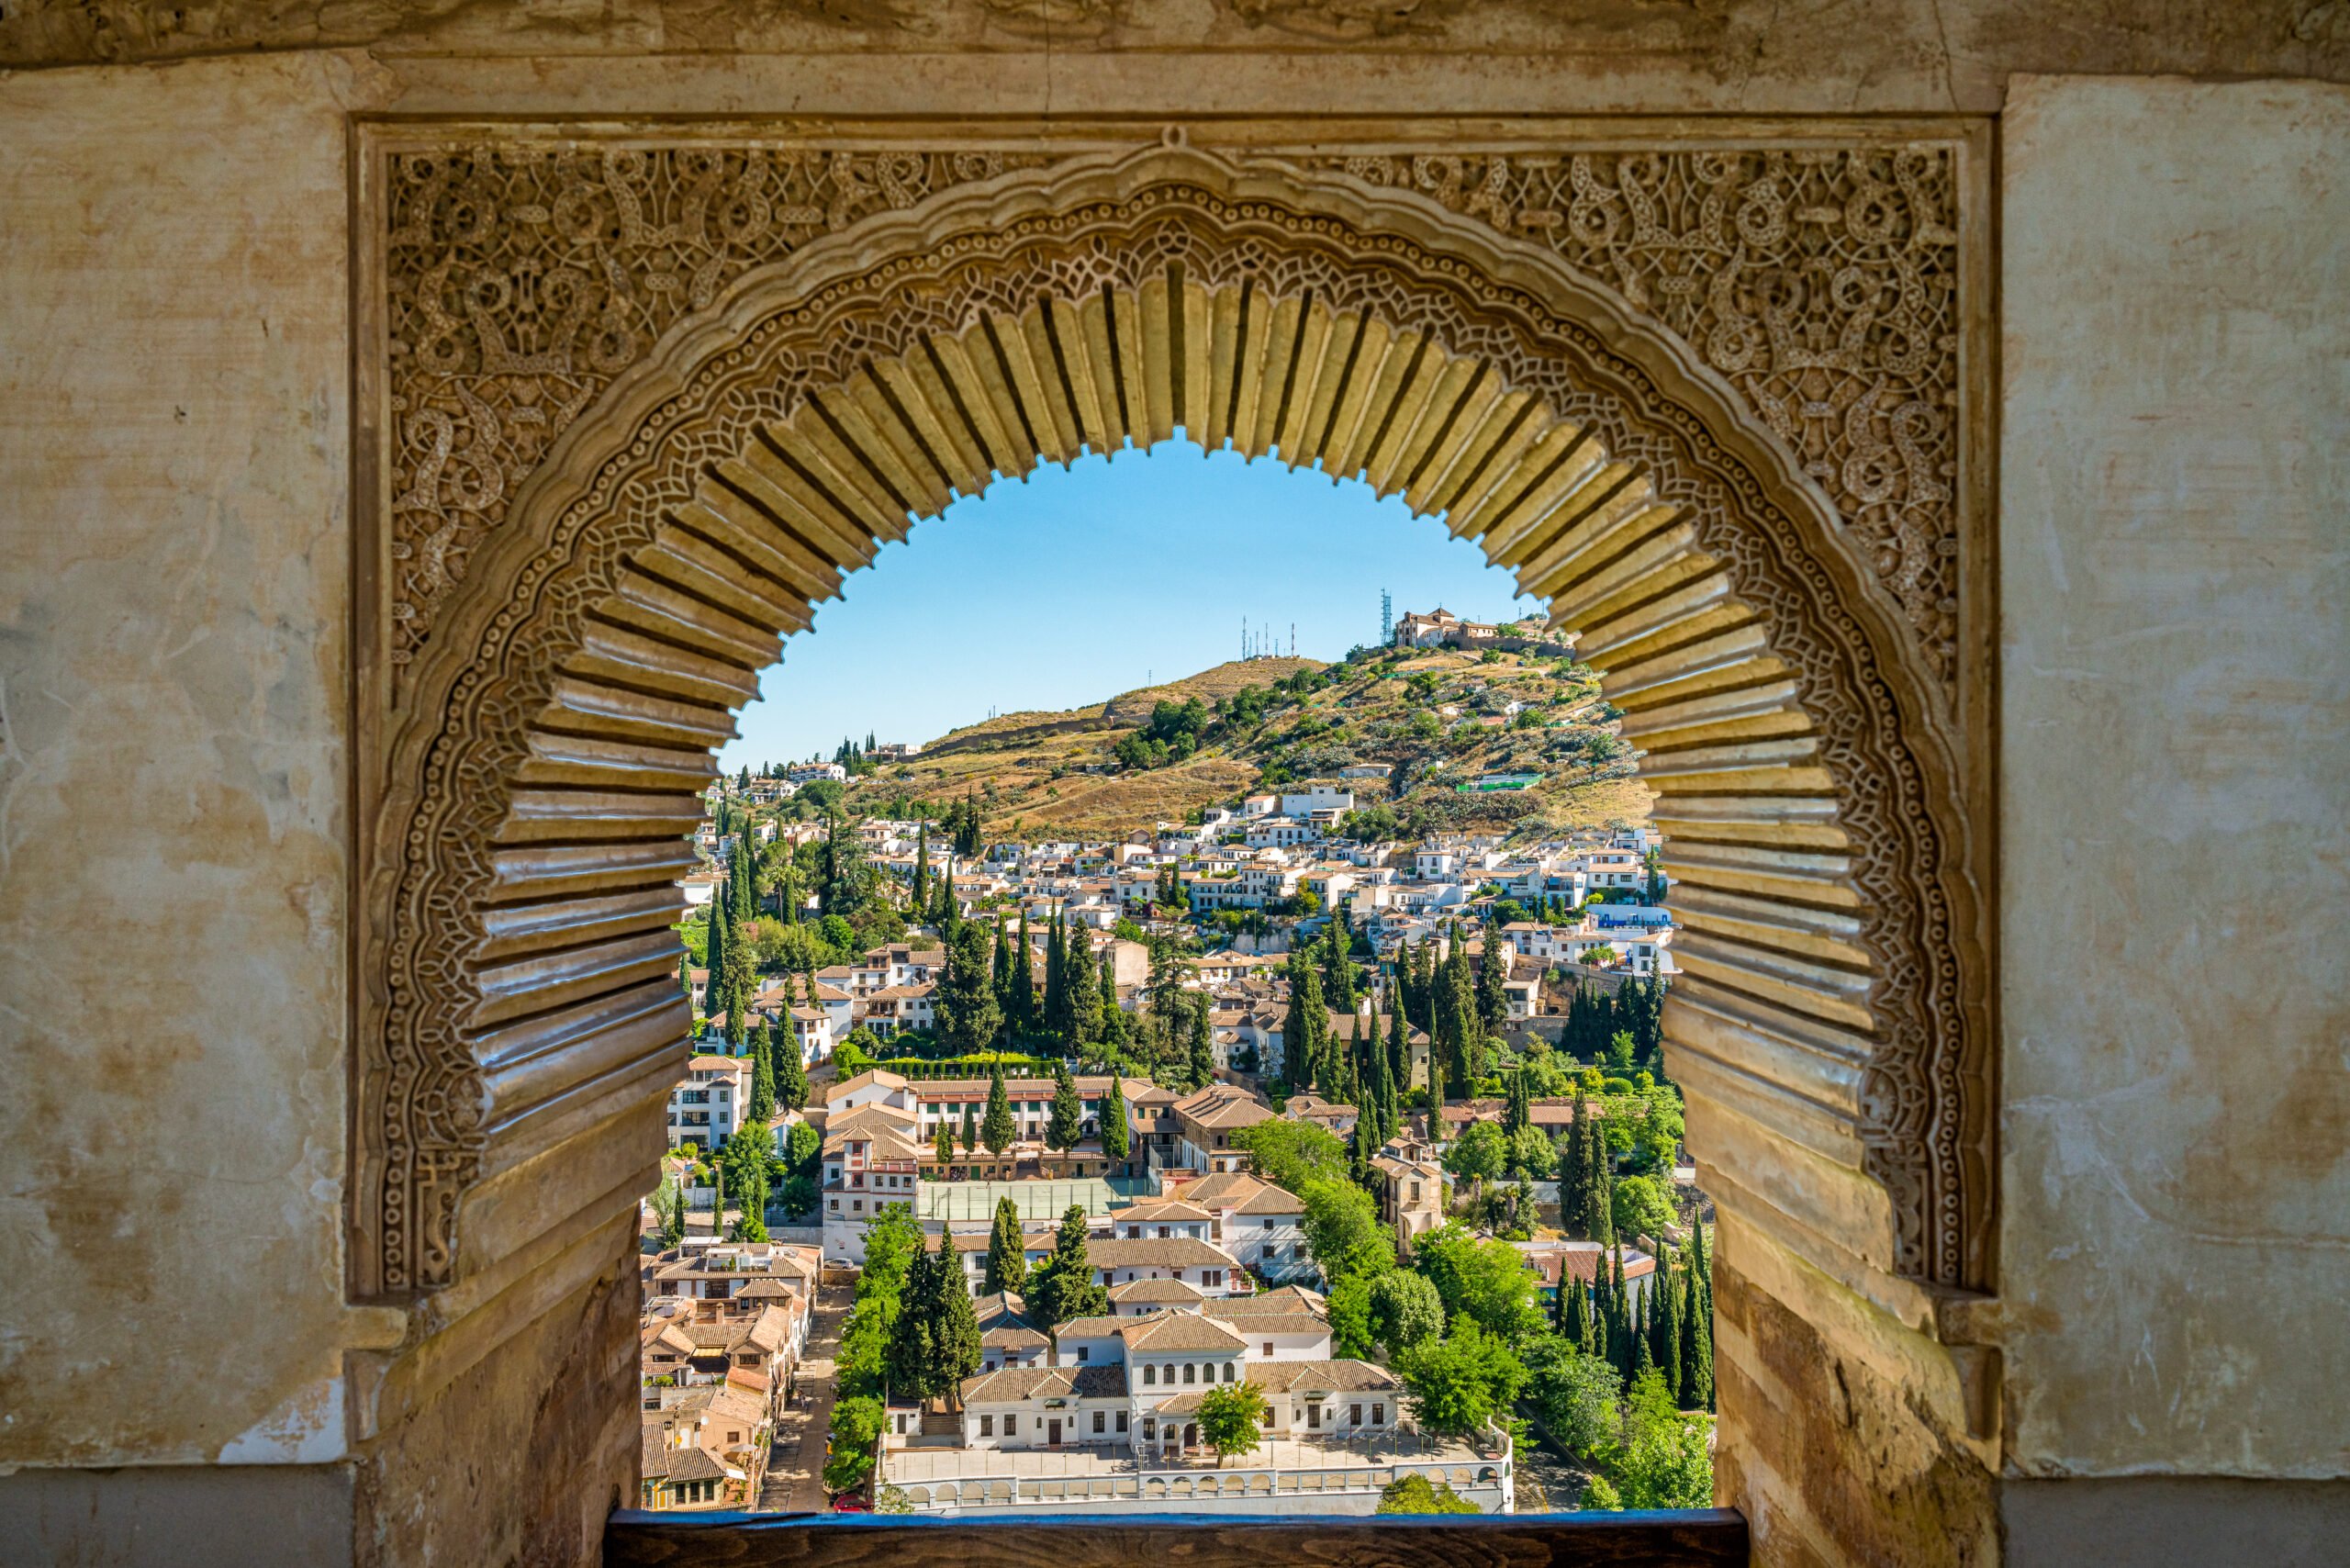 Discover The Arab Quarter Albaicin During The Granada Old Town & Albaicin Tapas Tour